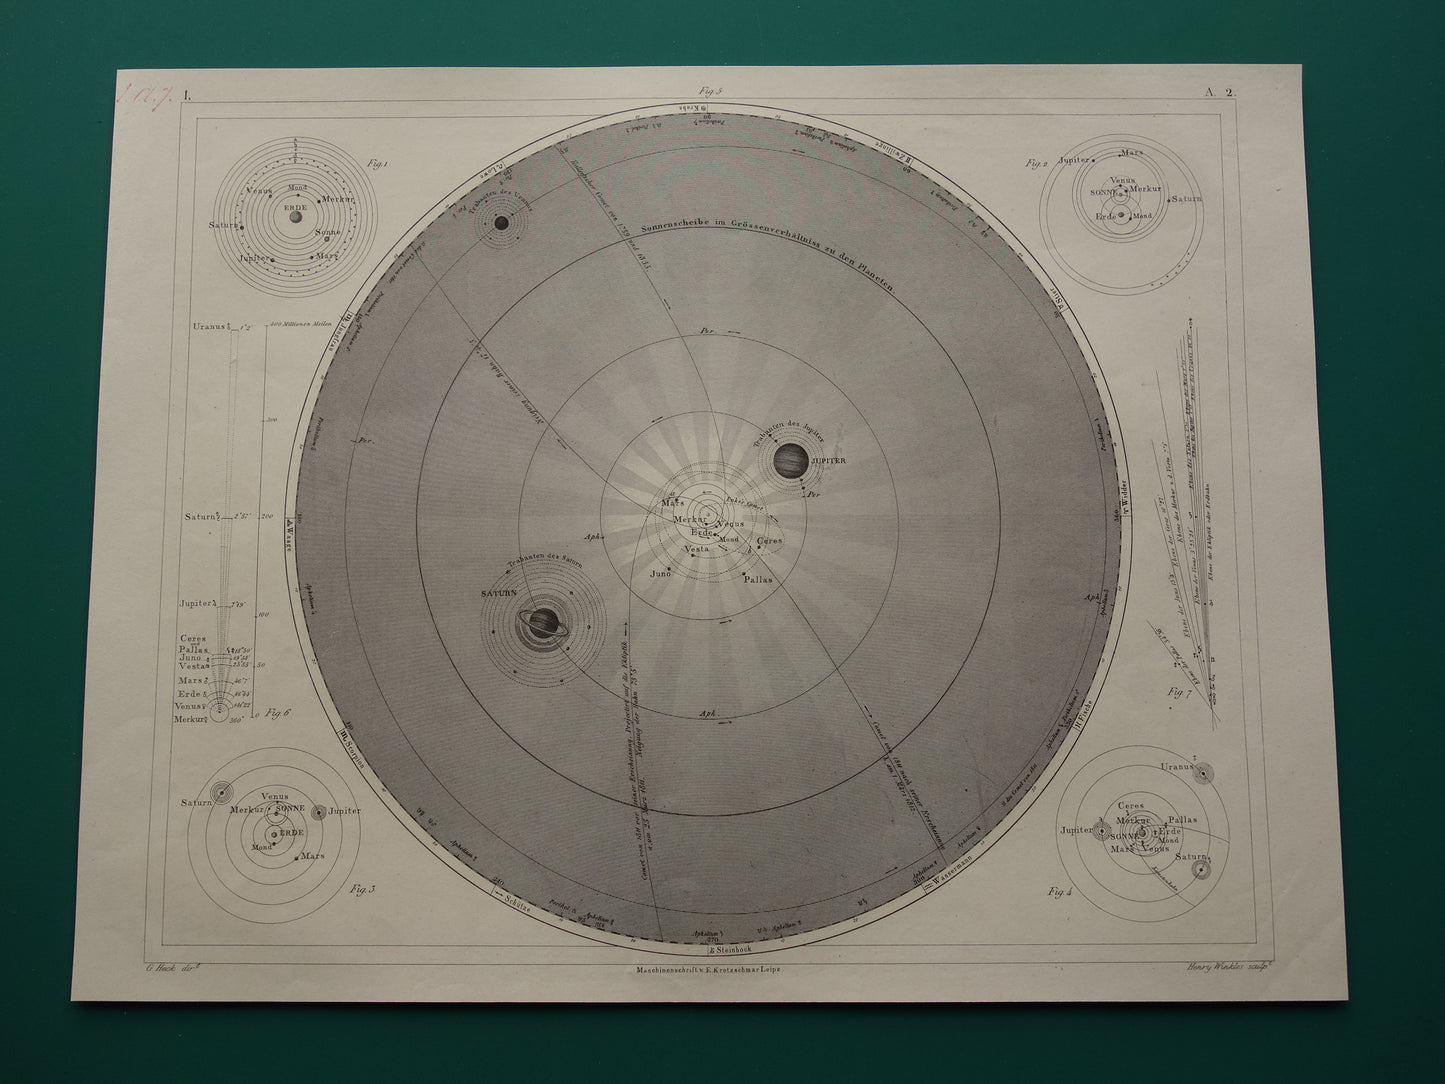 170+ jaar oude astronomie prent over zonnestelsel aarde planeten 1849 originele antieke print vintage astronomische illustratie